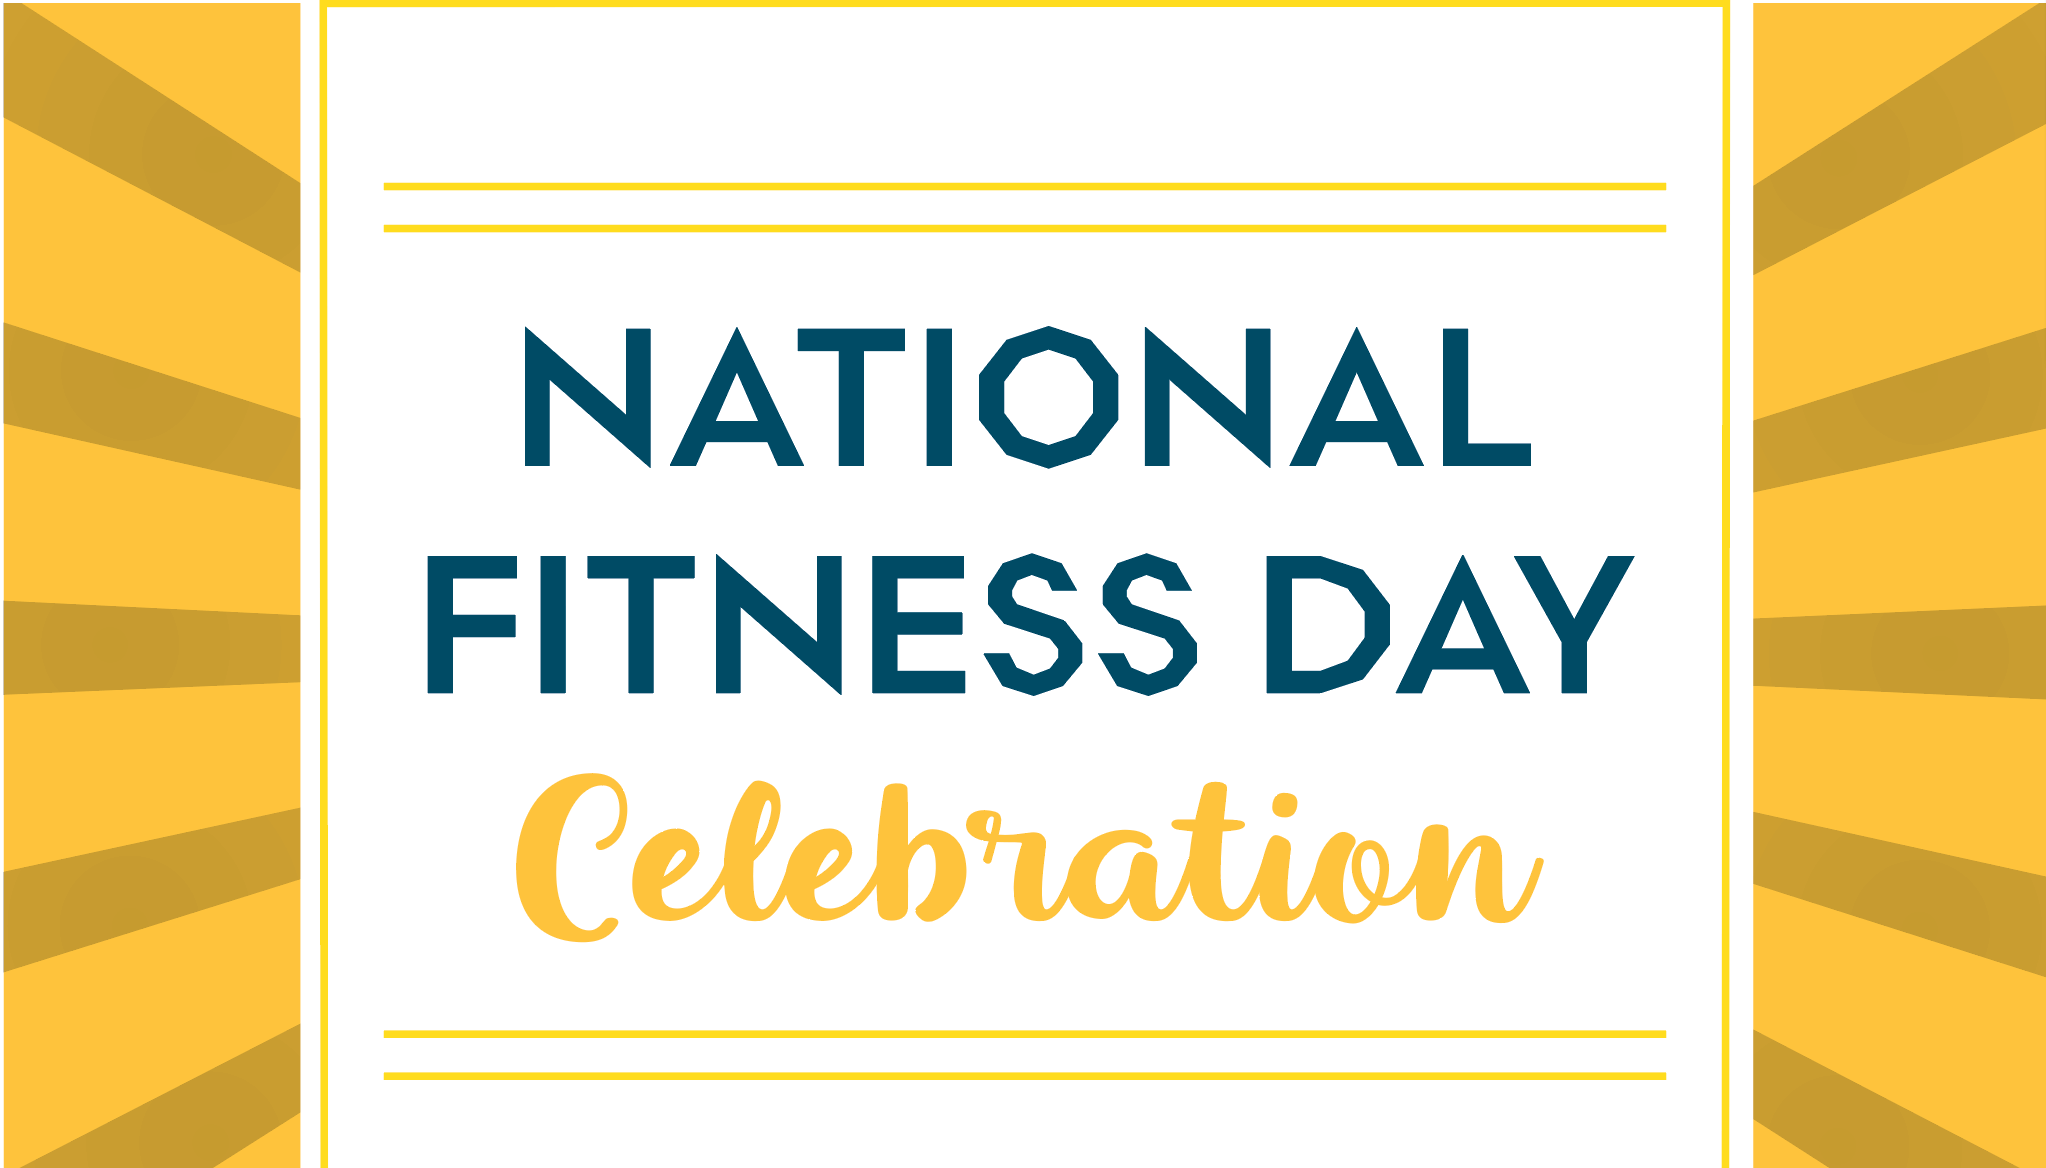 National Fitness Day Celebration